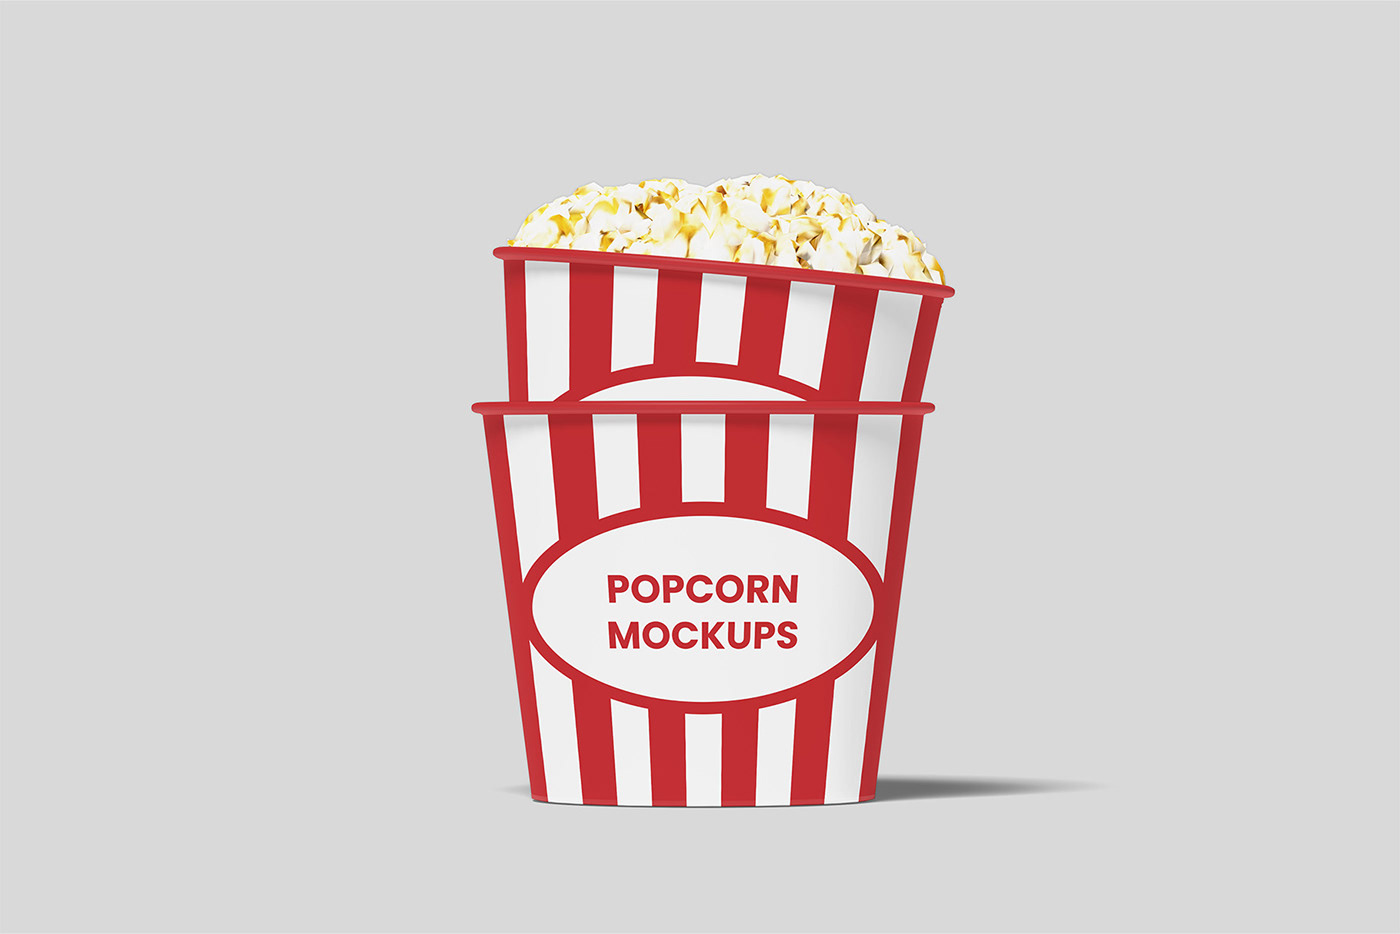 Mockup mockup design mockup psd mockup free popcorn Pop corn Packaging packaging design package design  snack